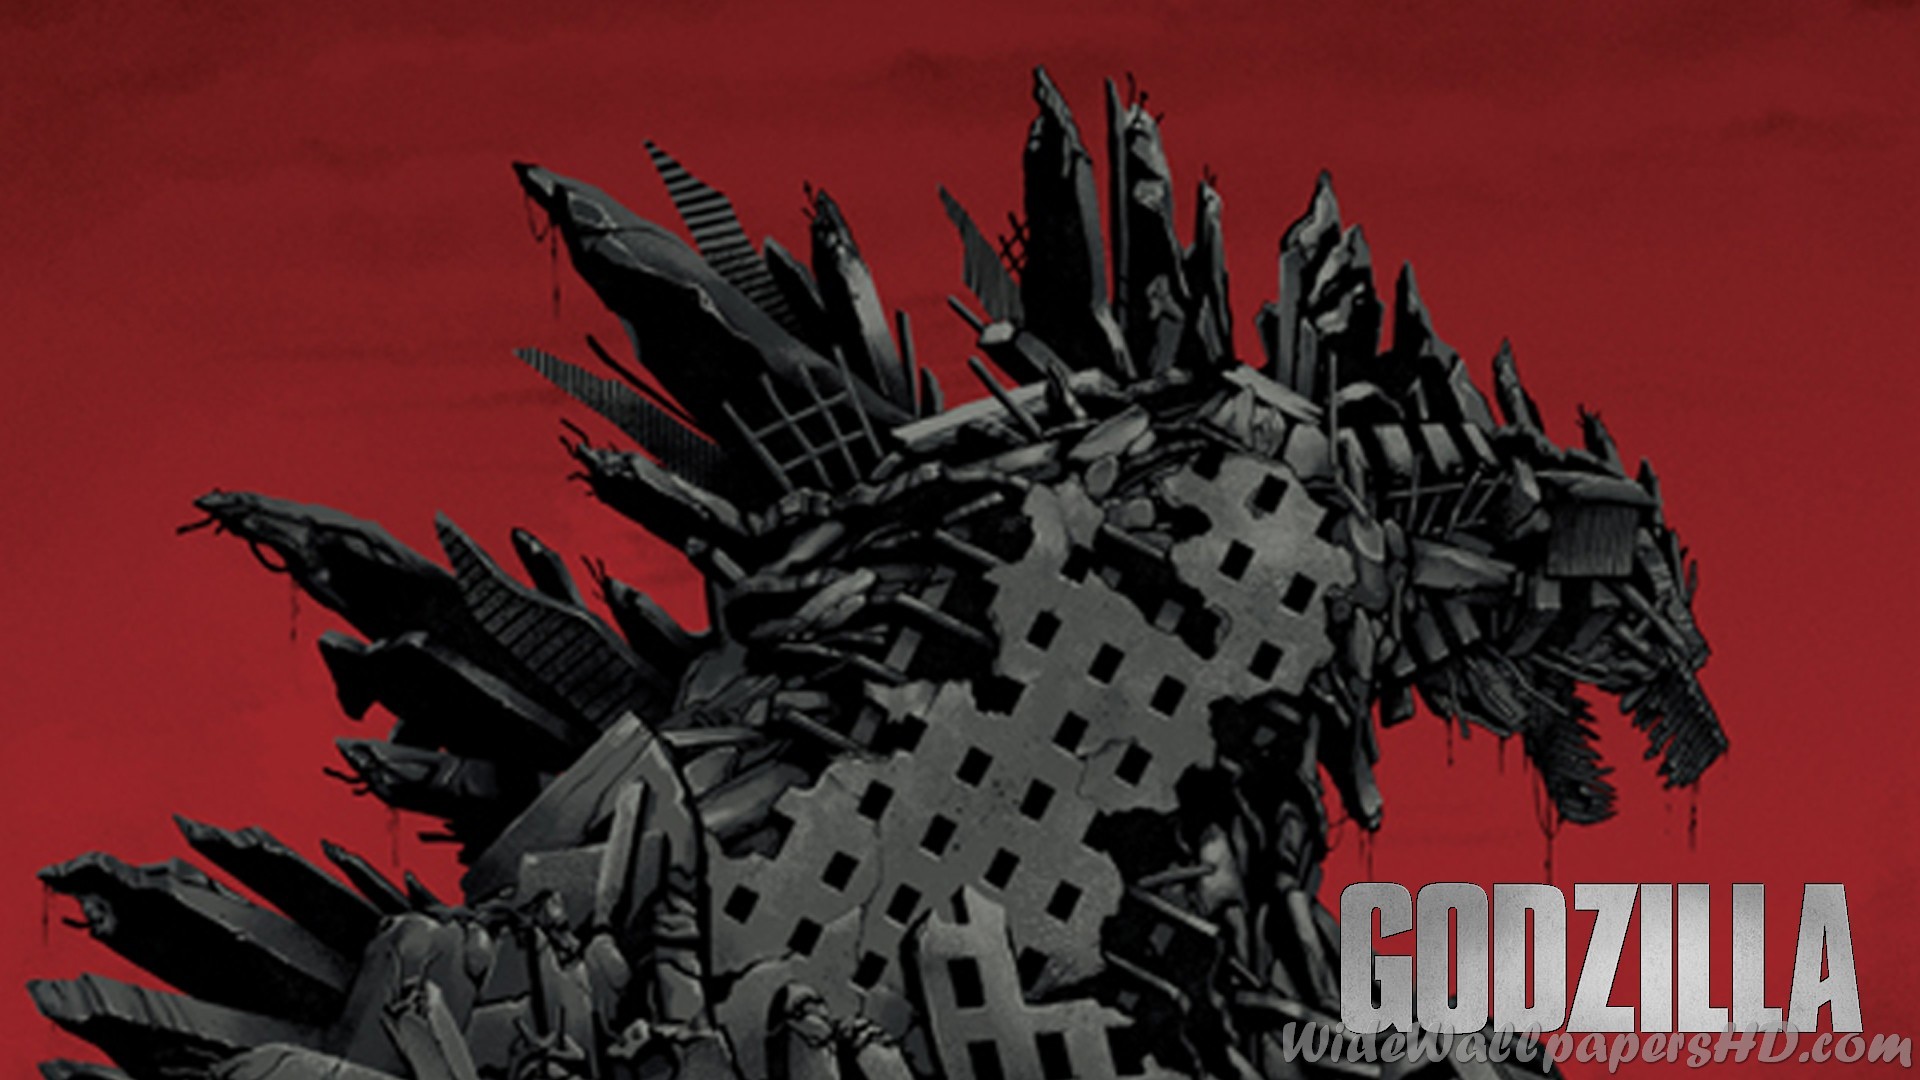 Godzilla 2014 wallpaper – 1152031